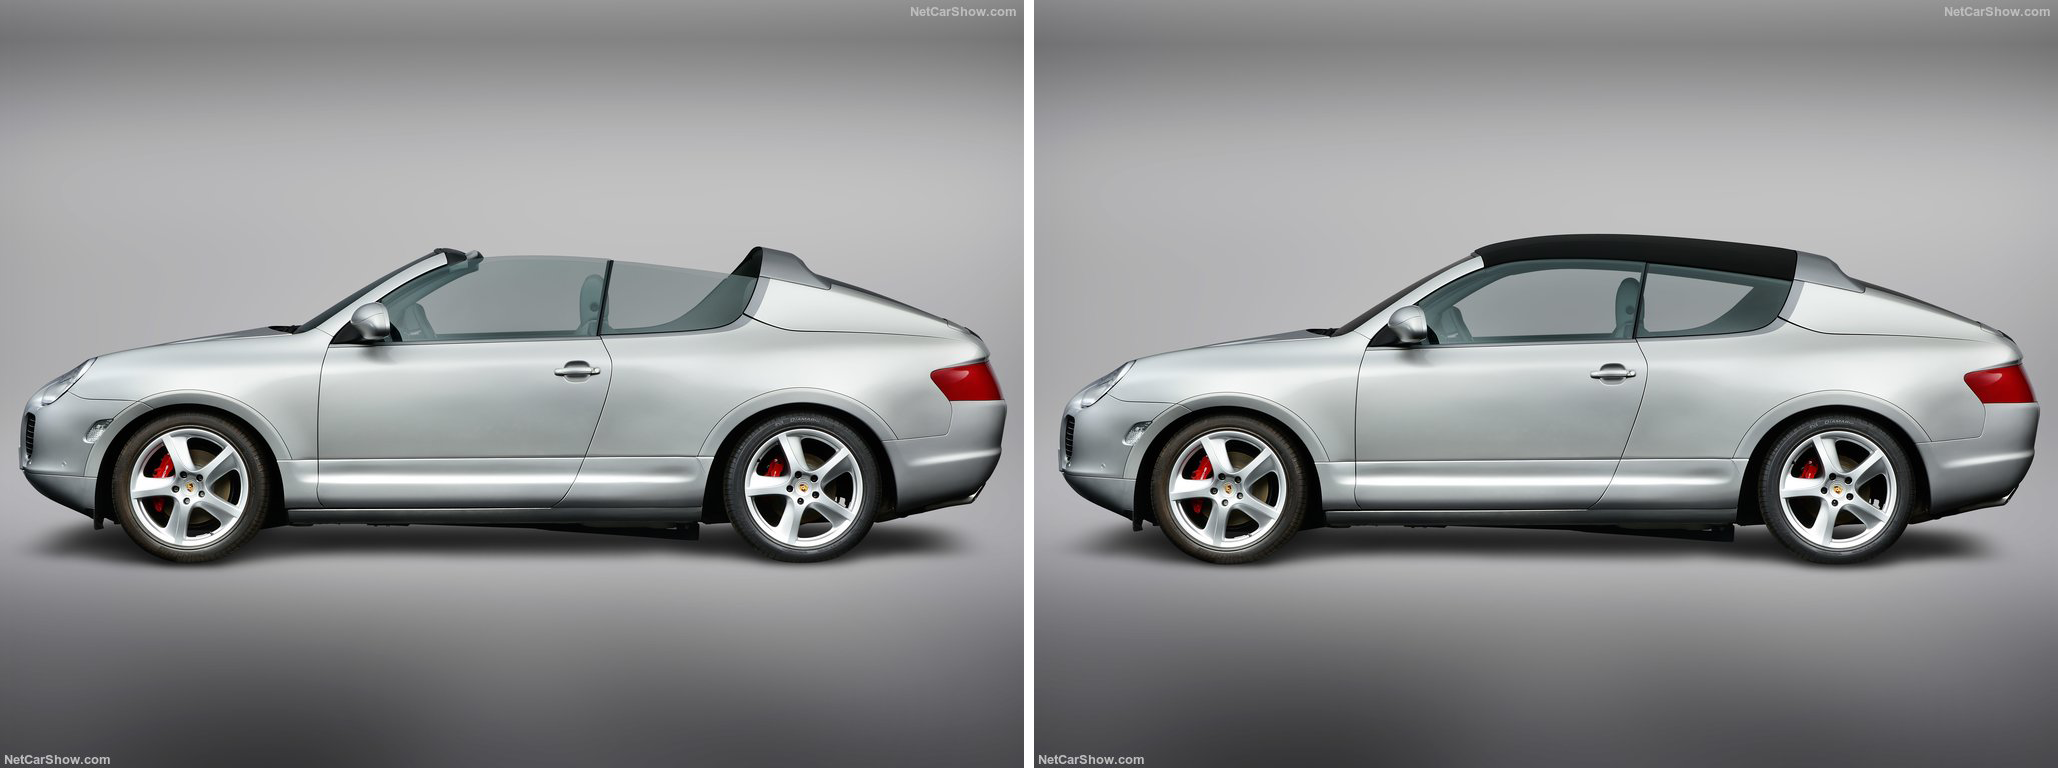 Porsche Cayenne Convertible Concept 2002